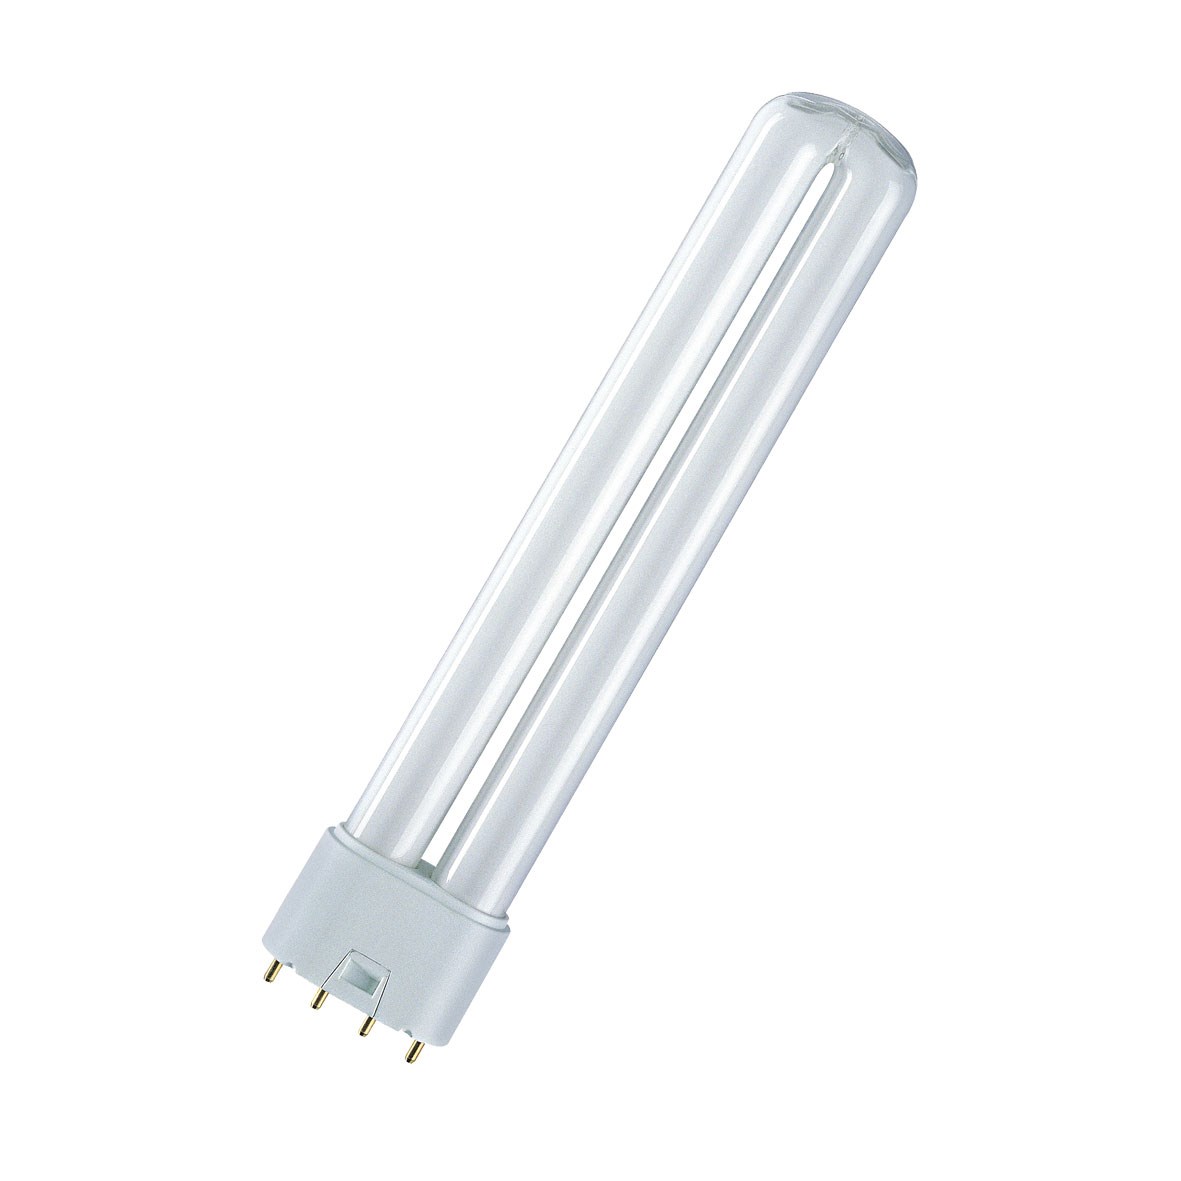 Bild von Lumilux Kompakt-Leuchtstofflampe 4-Stift / 1.620 Lumen / 24 W / 2G11 / 87V / 4.000K / 840 Kaltweiß / dimmbar